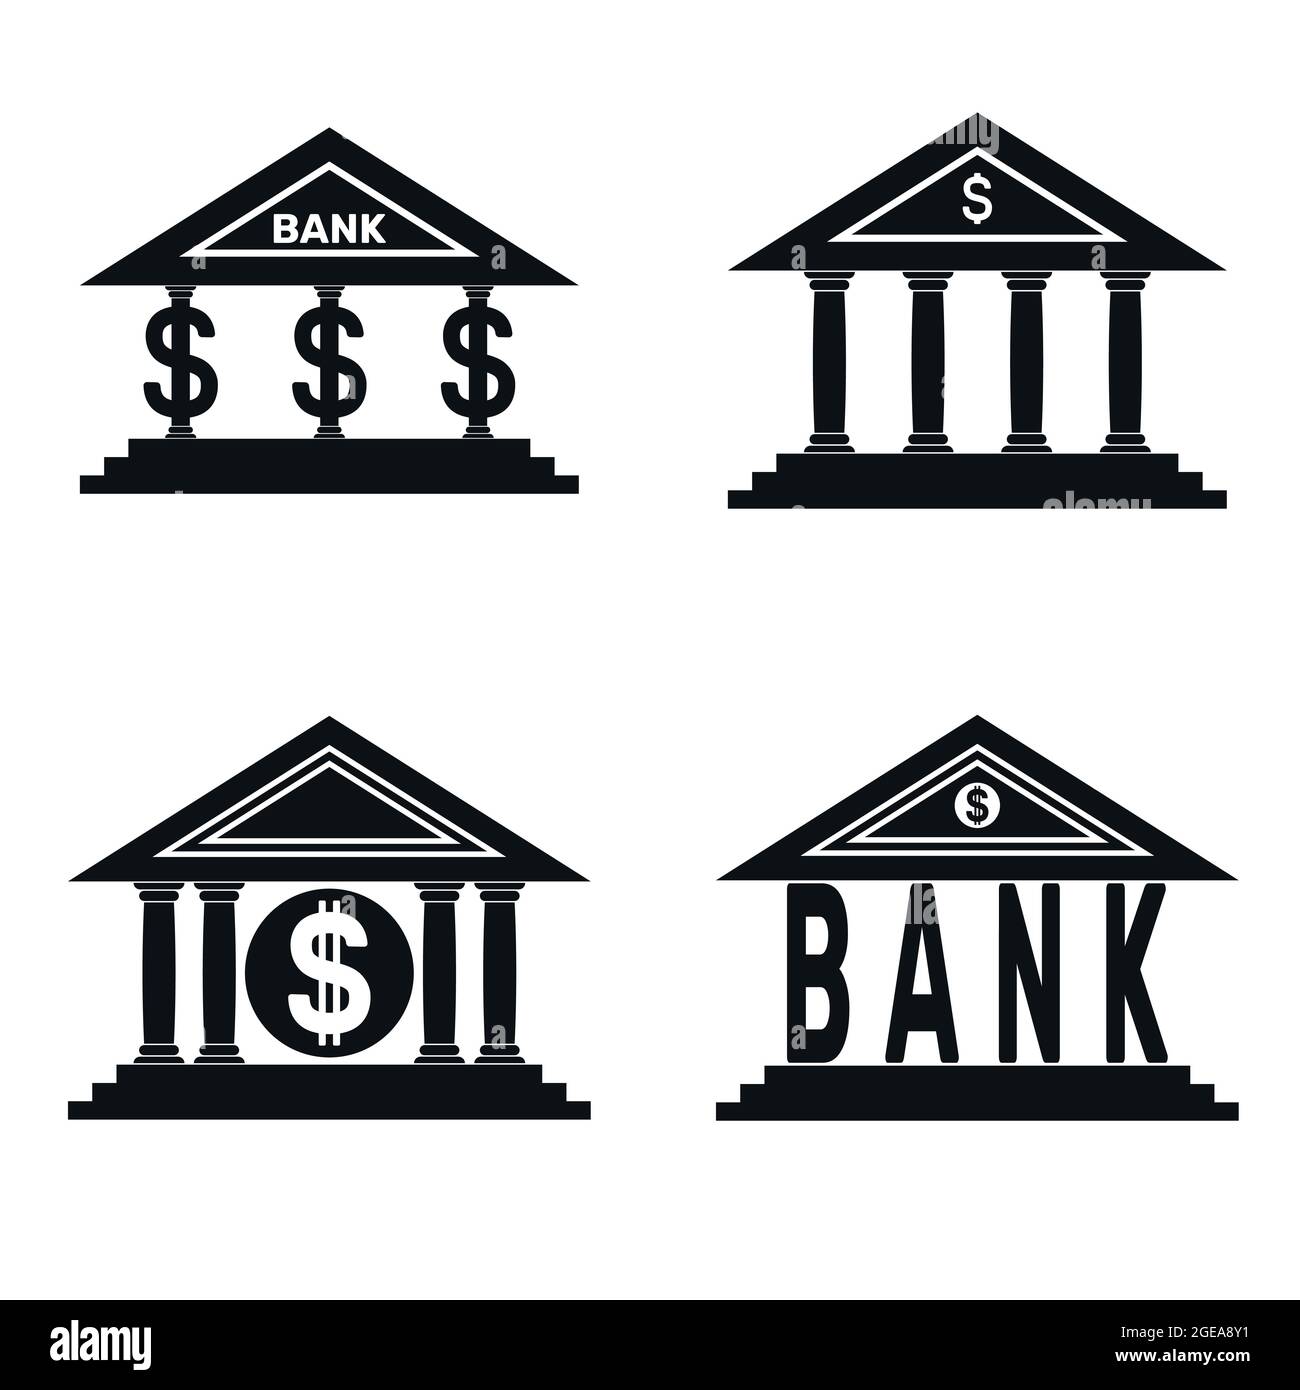 Vektor-Design von vier schwarzen Bank-Logos, Bank-Logo mit dem amerikanischen Dollar-Symbol Stock Vektor